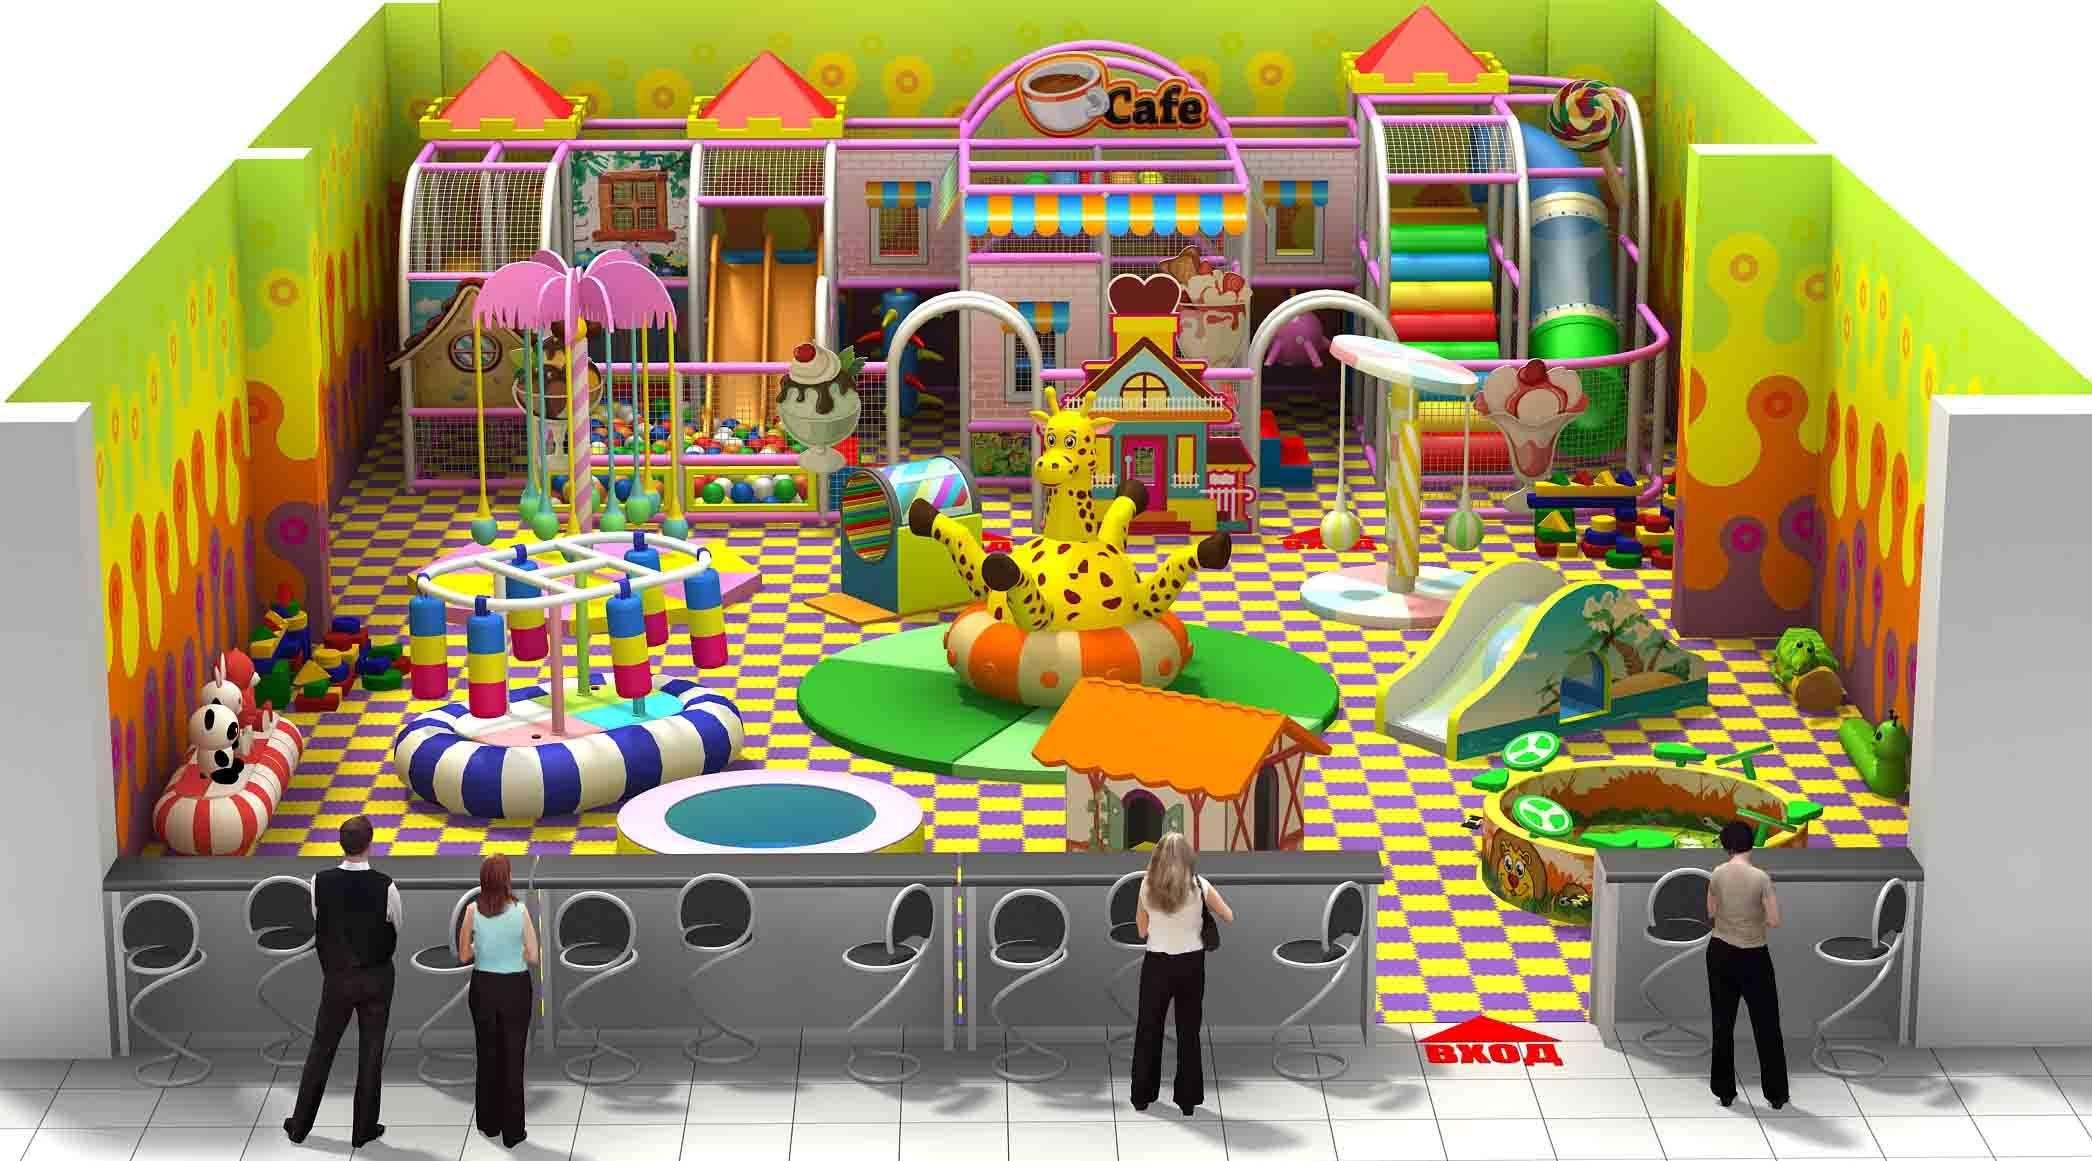 Зоны развлечений. Развлекательный центр "детская игровой центр сказка" Динская. Детская игровая комната. Детские игровые лабиринты. Игровая комната для детей.